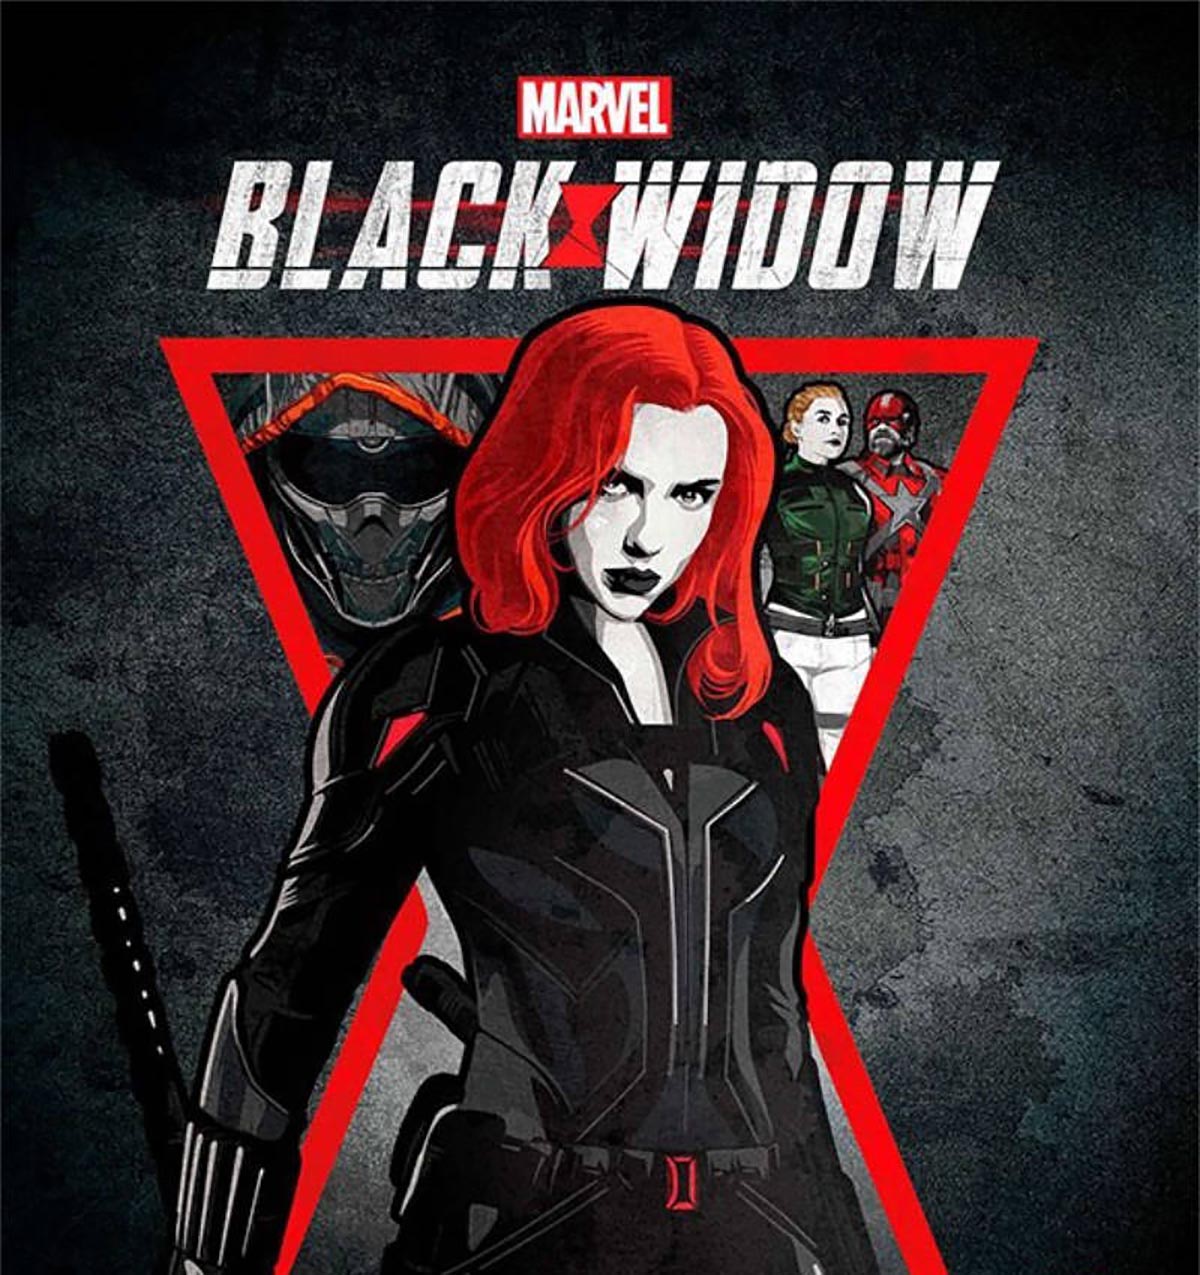 Képek a Black Widowból.